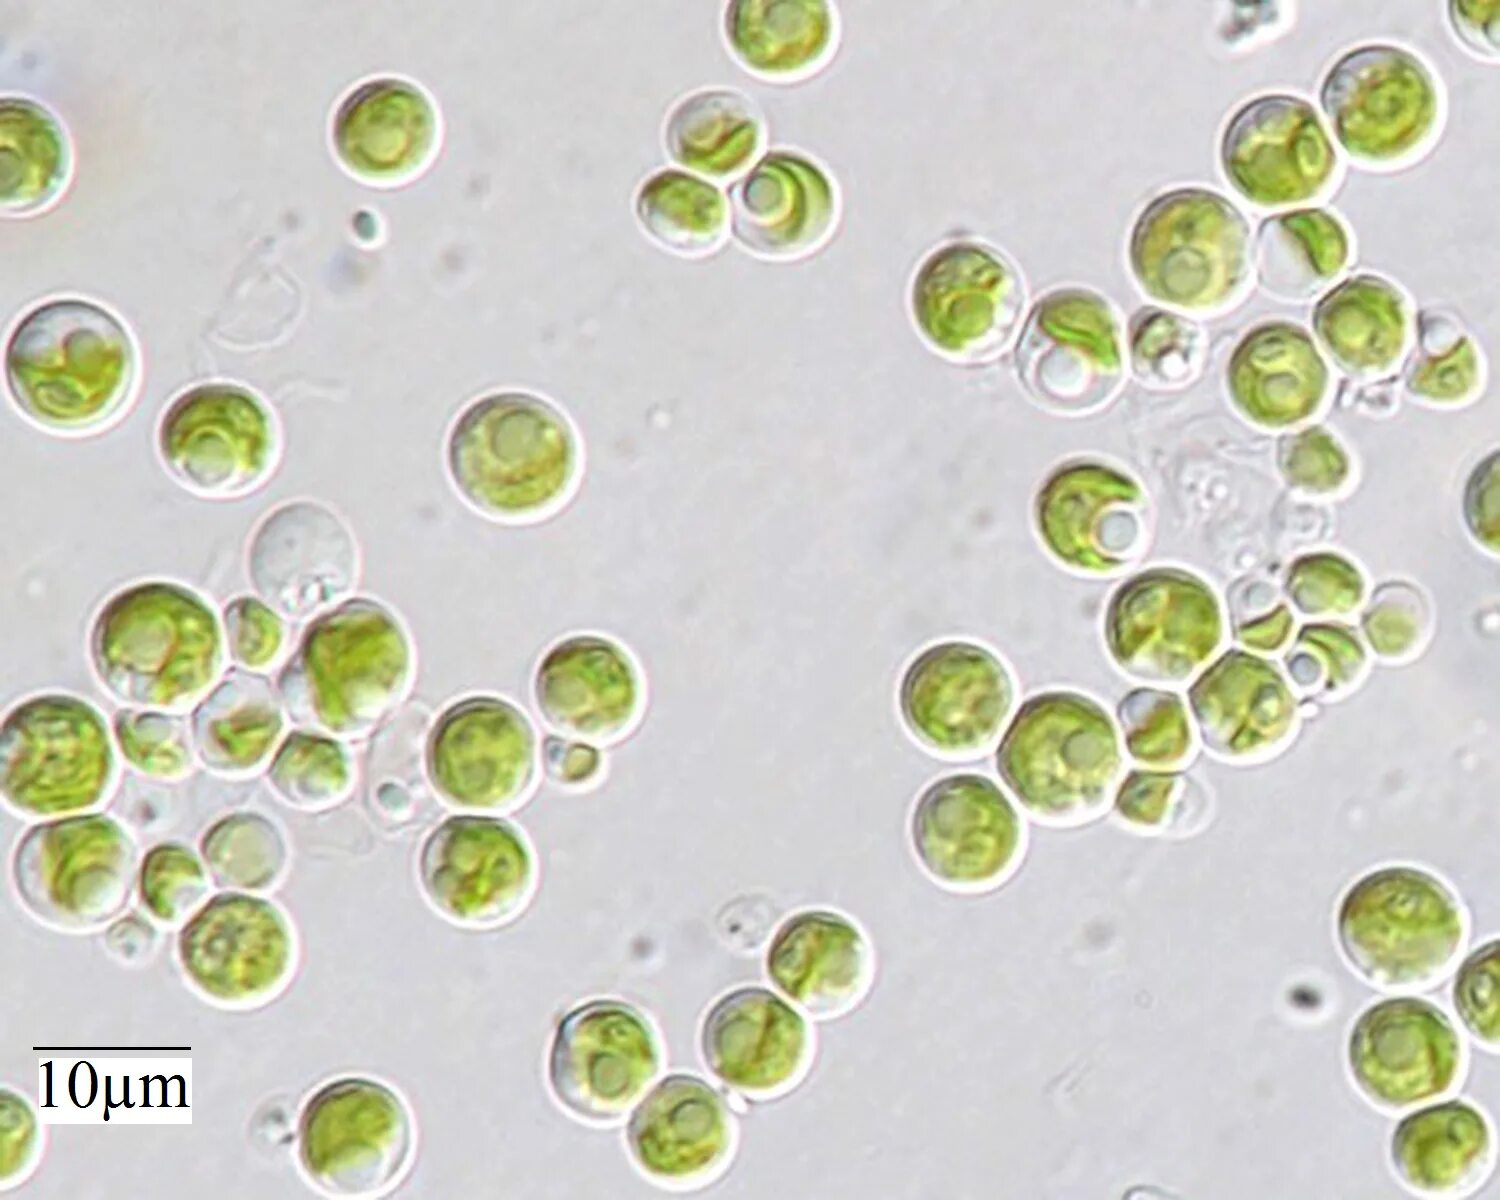 Микроводоросли хлорелла. Одноклеточная водоросль хлорелла. Хлорелла вульгарис. Зеленые водоросли хлорелла.